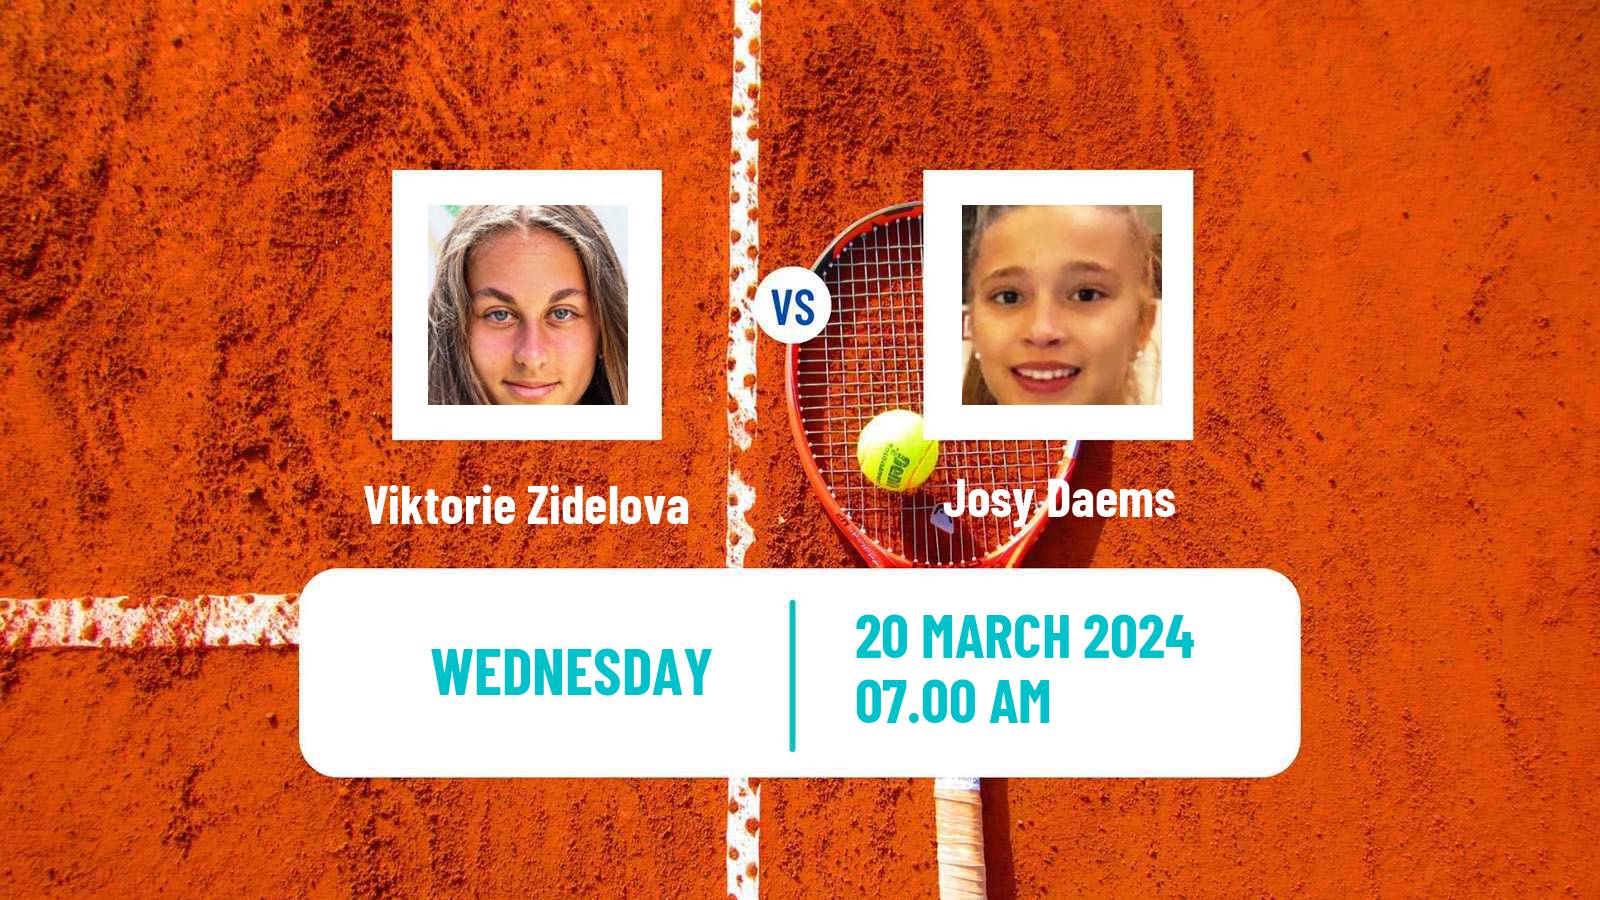 Tennis ITF W15 Antalya 6 Women Viktorie Zidelova - Josy Daems